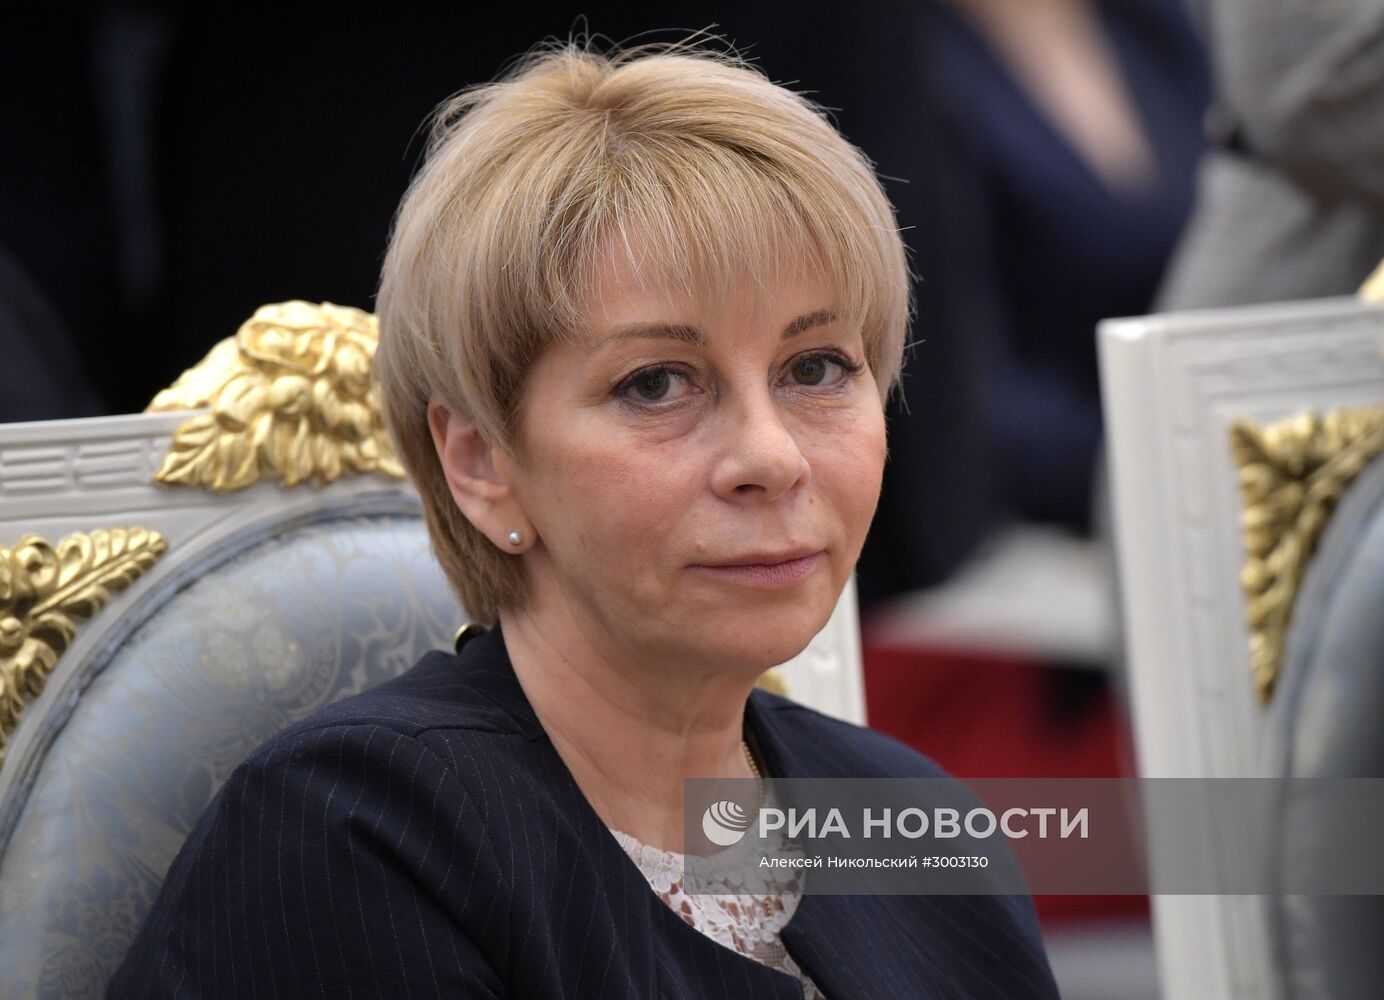 Директор организации "Справедливая помощь" Елизавета Глинка (Доктор Лиза) погибла при крушении самолёта Ту-154 в Сочи